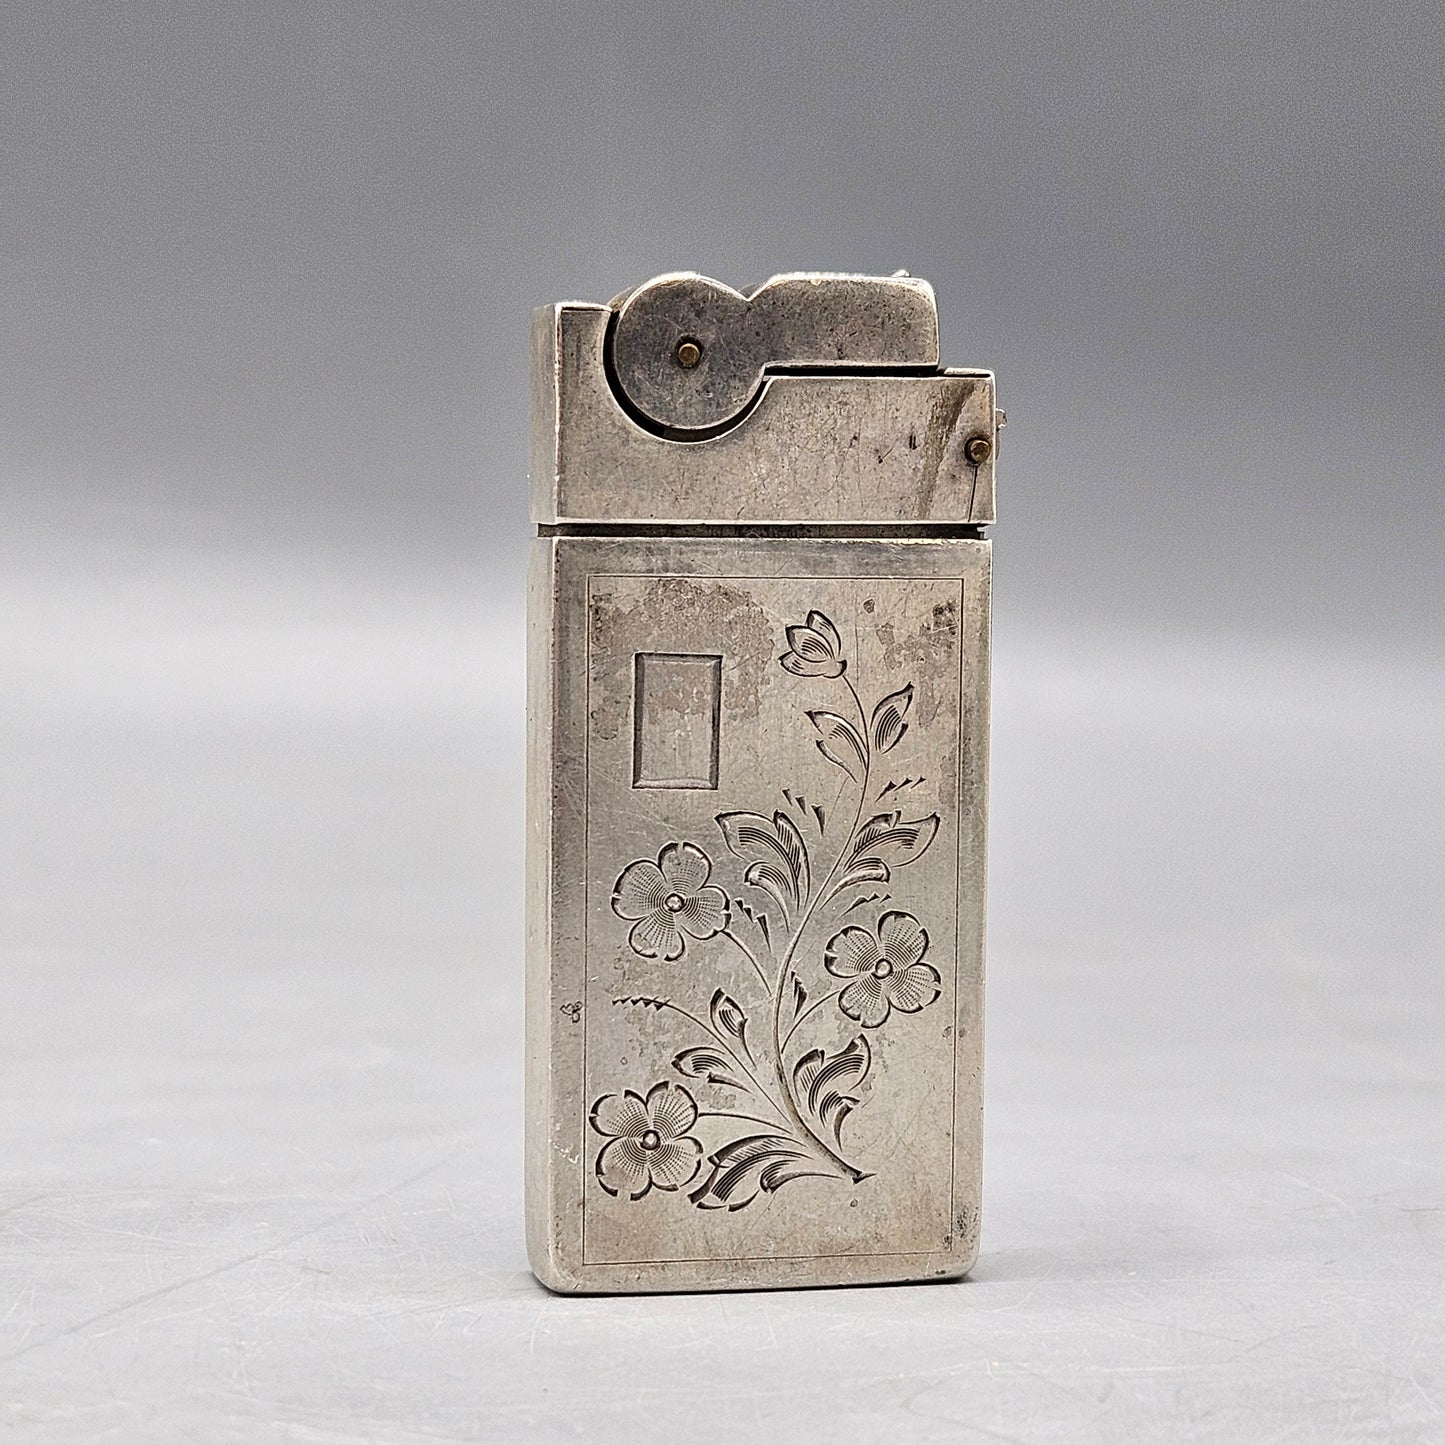 Vintage ASR Sterling Silver Cigarette Lighter with Etching